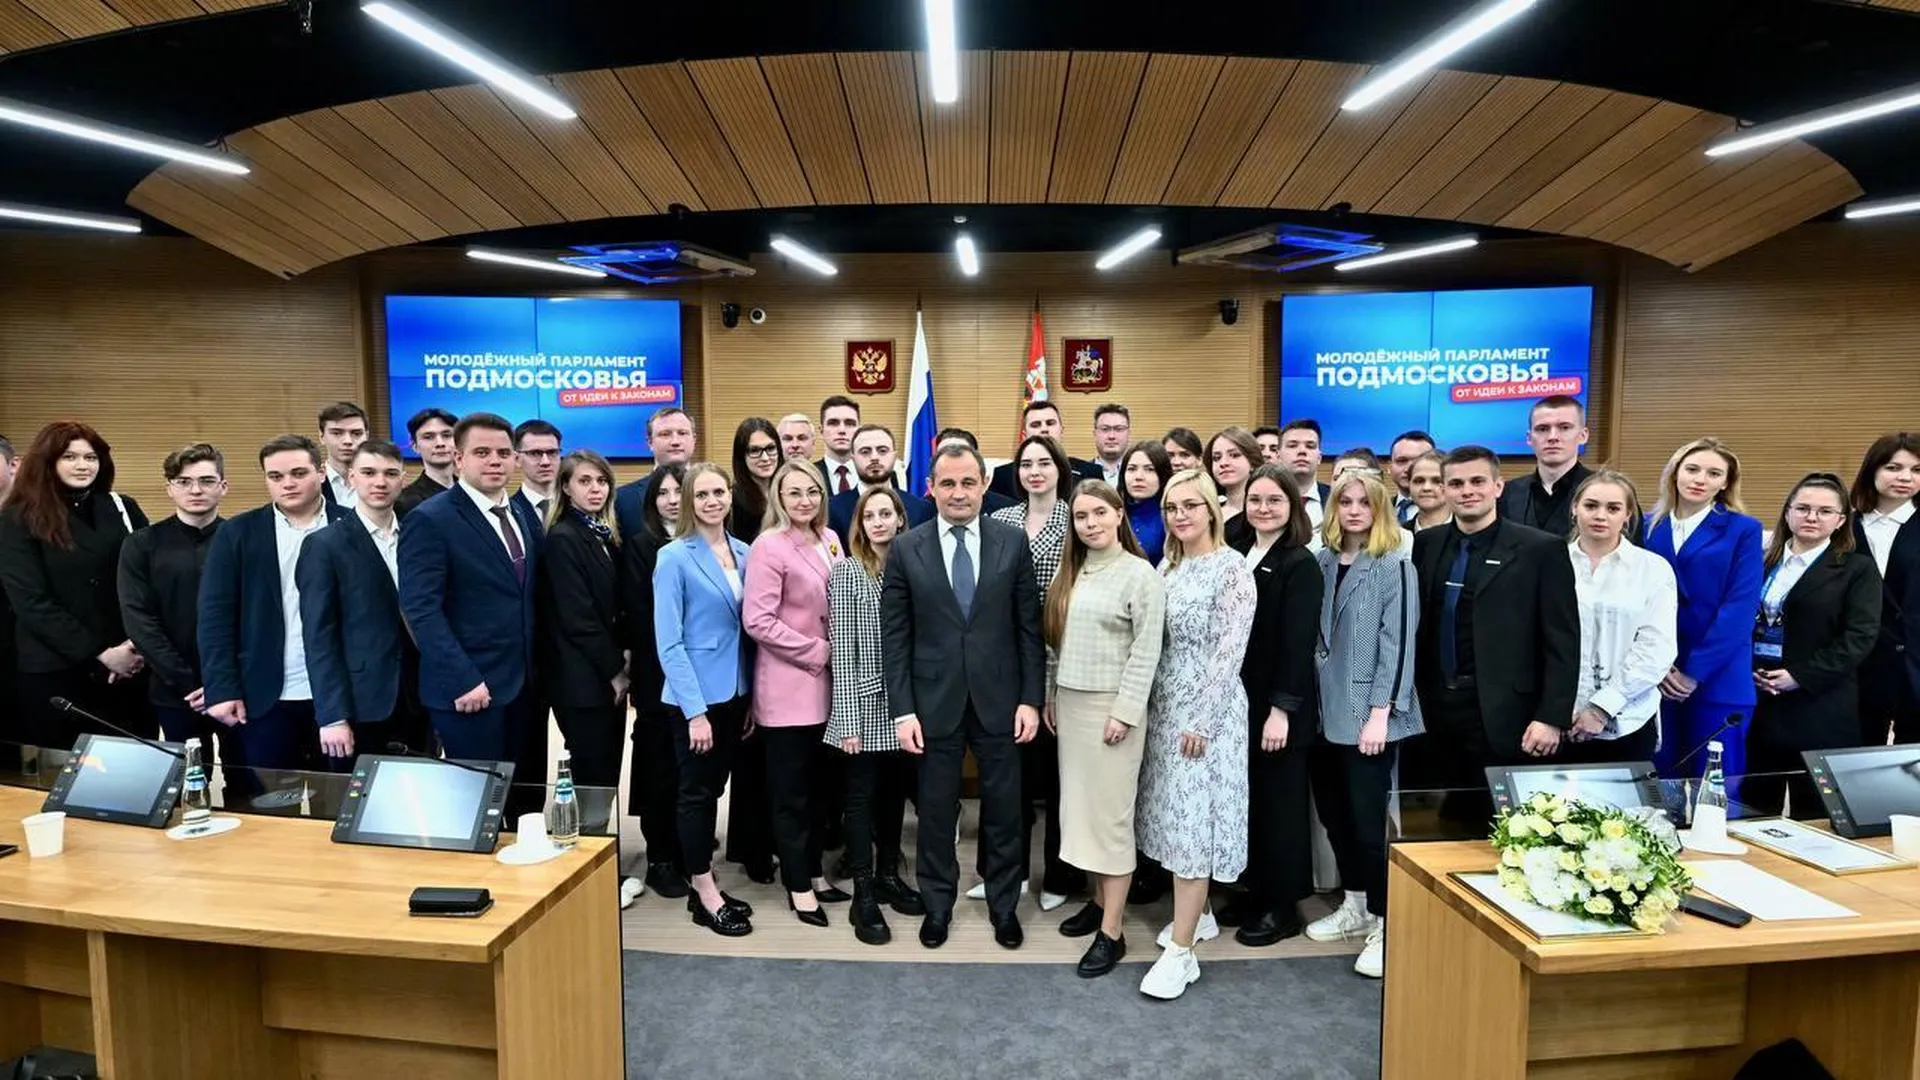 Депутат Мособлдумы Брынцалов встретился с молодежным парламентом